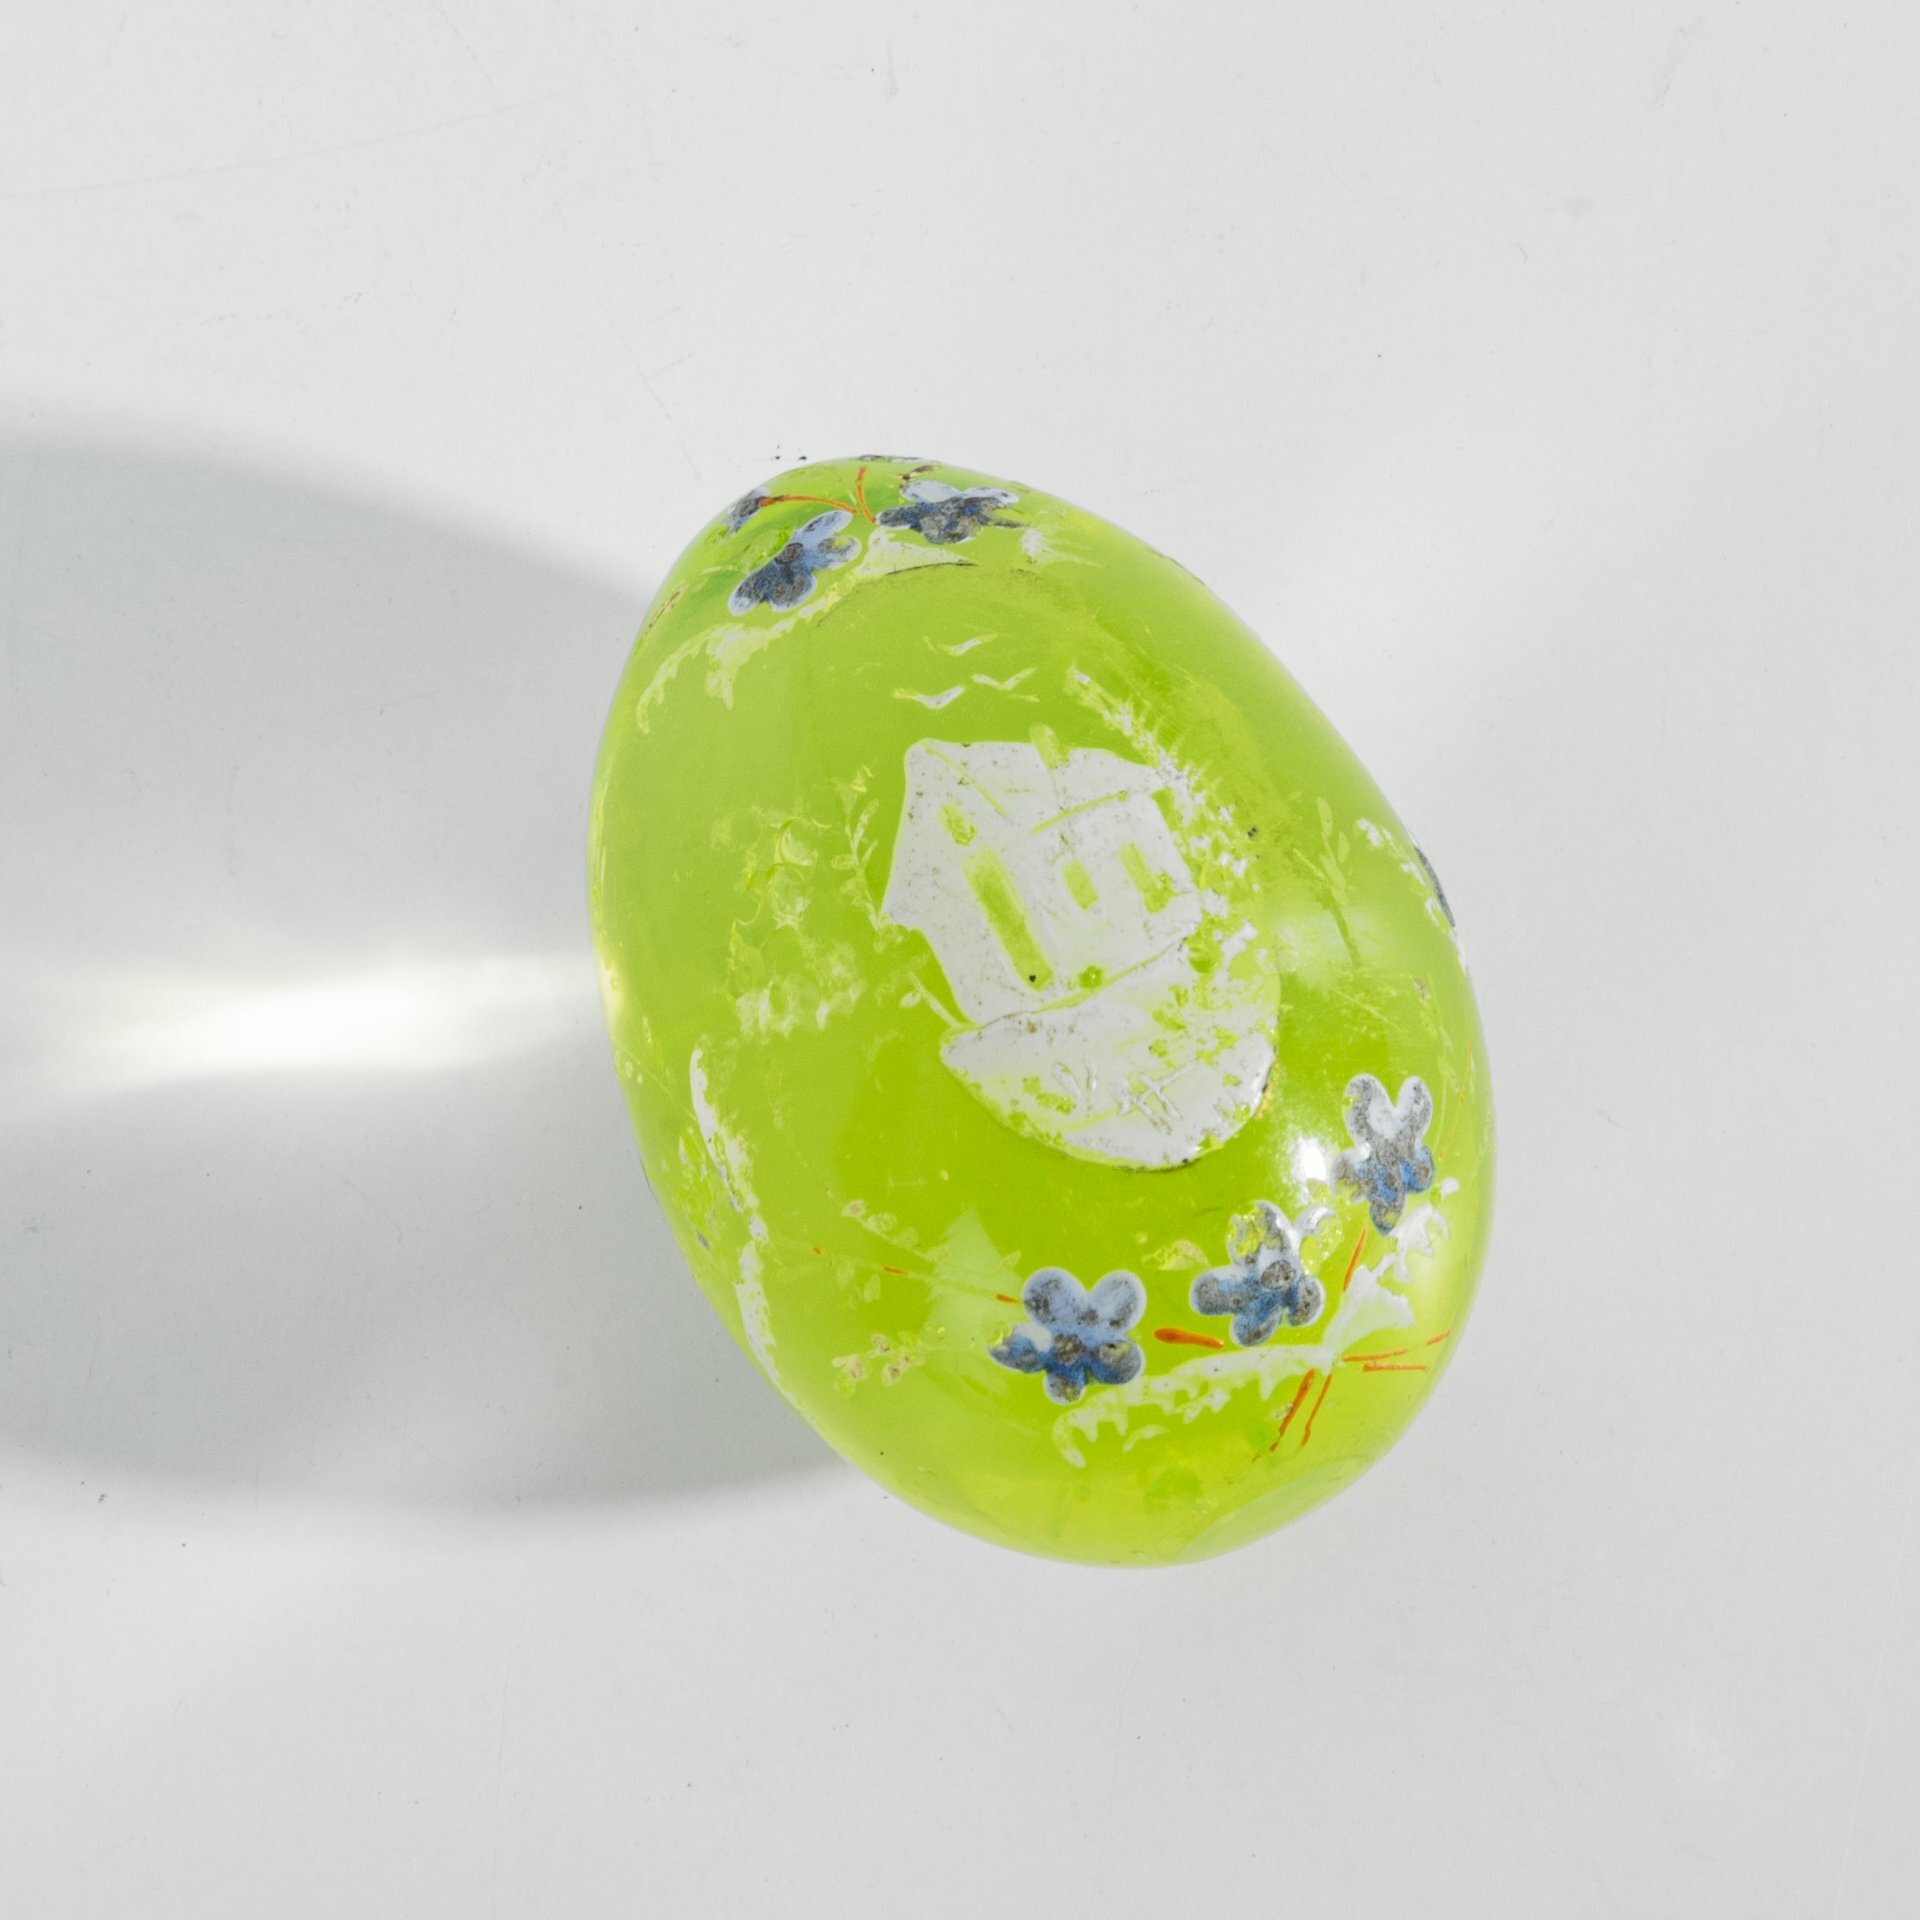 Яйцо пасхальное из уранового стекла, стекло, эмали, Российская империя, 1880-1890 гг. - фотография № 1